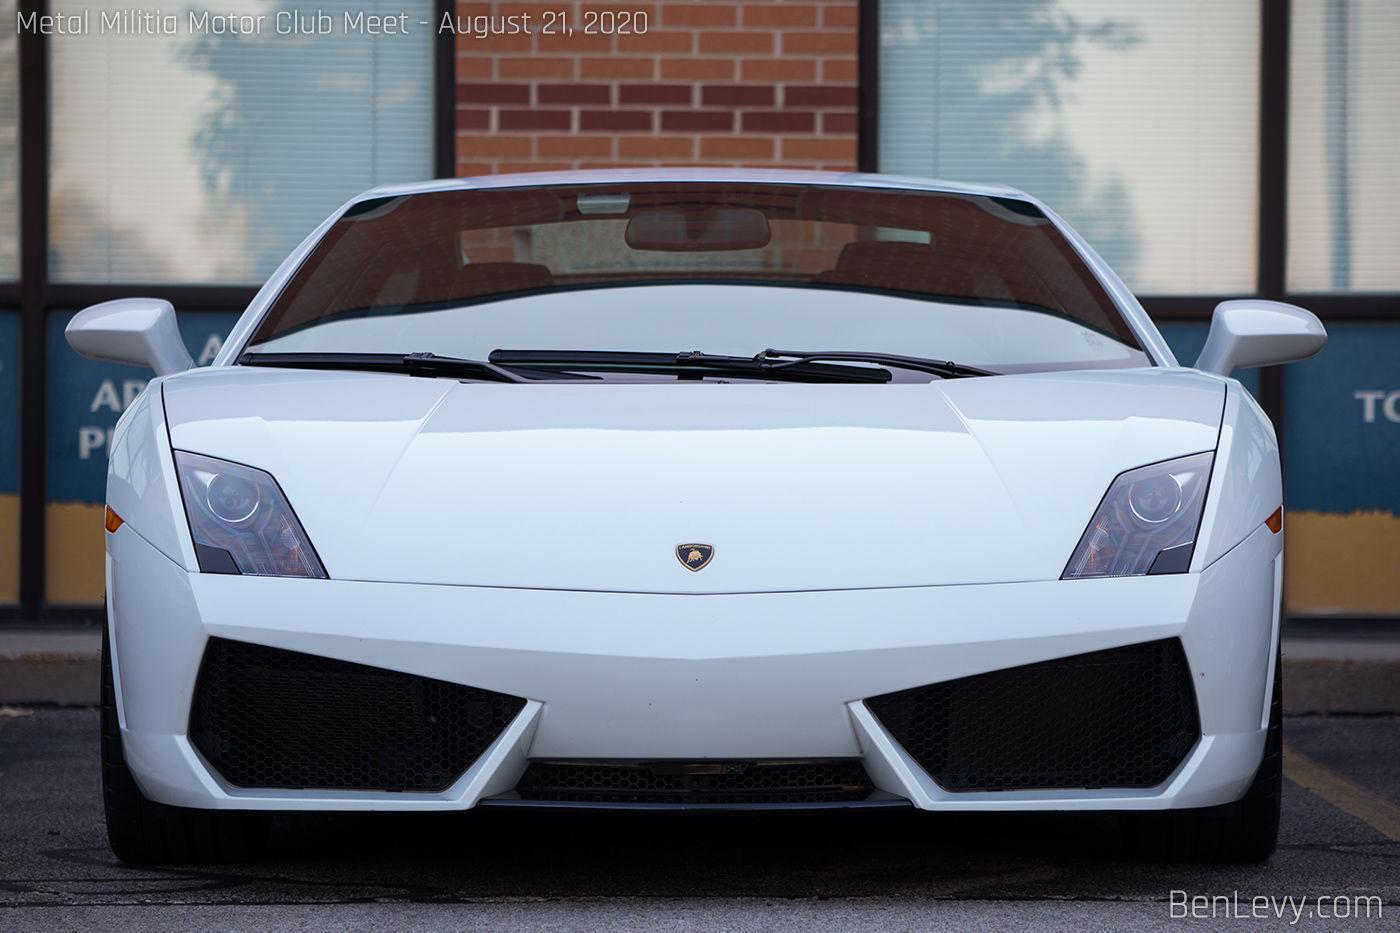 Front of a white Lamborghini Gallardo